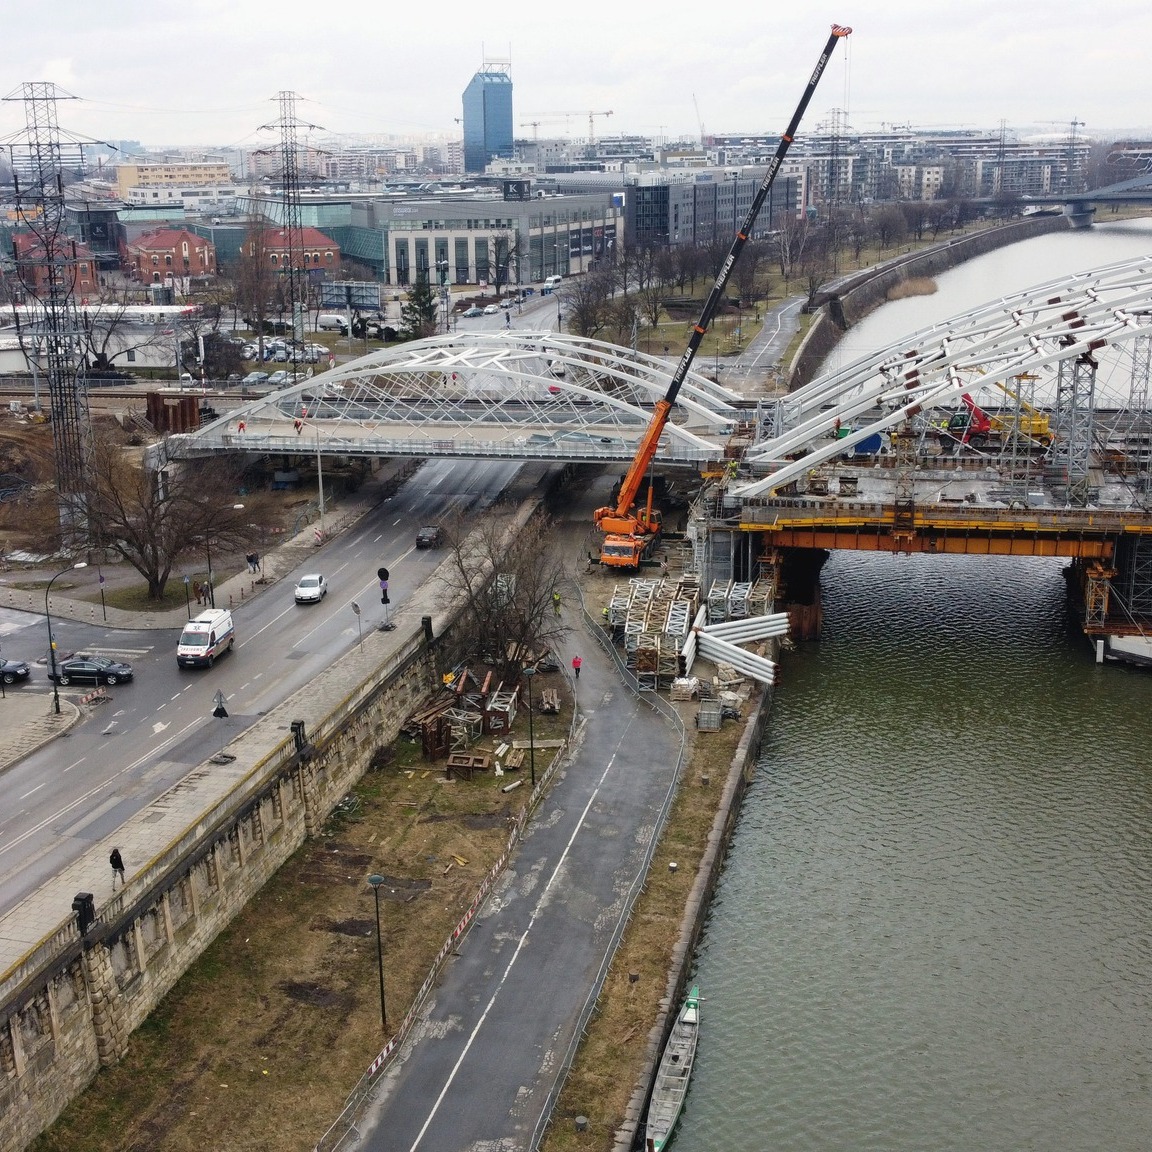 Zdjęcie pokazuje budowę mostów kolejowych w okolicy ulicy Podgórskiej w Krakowie.